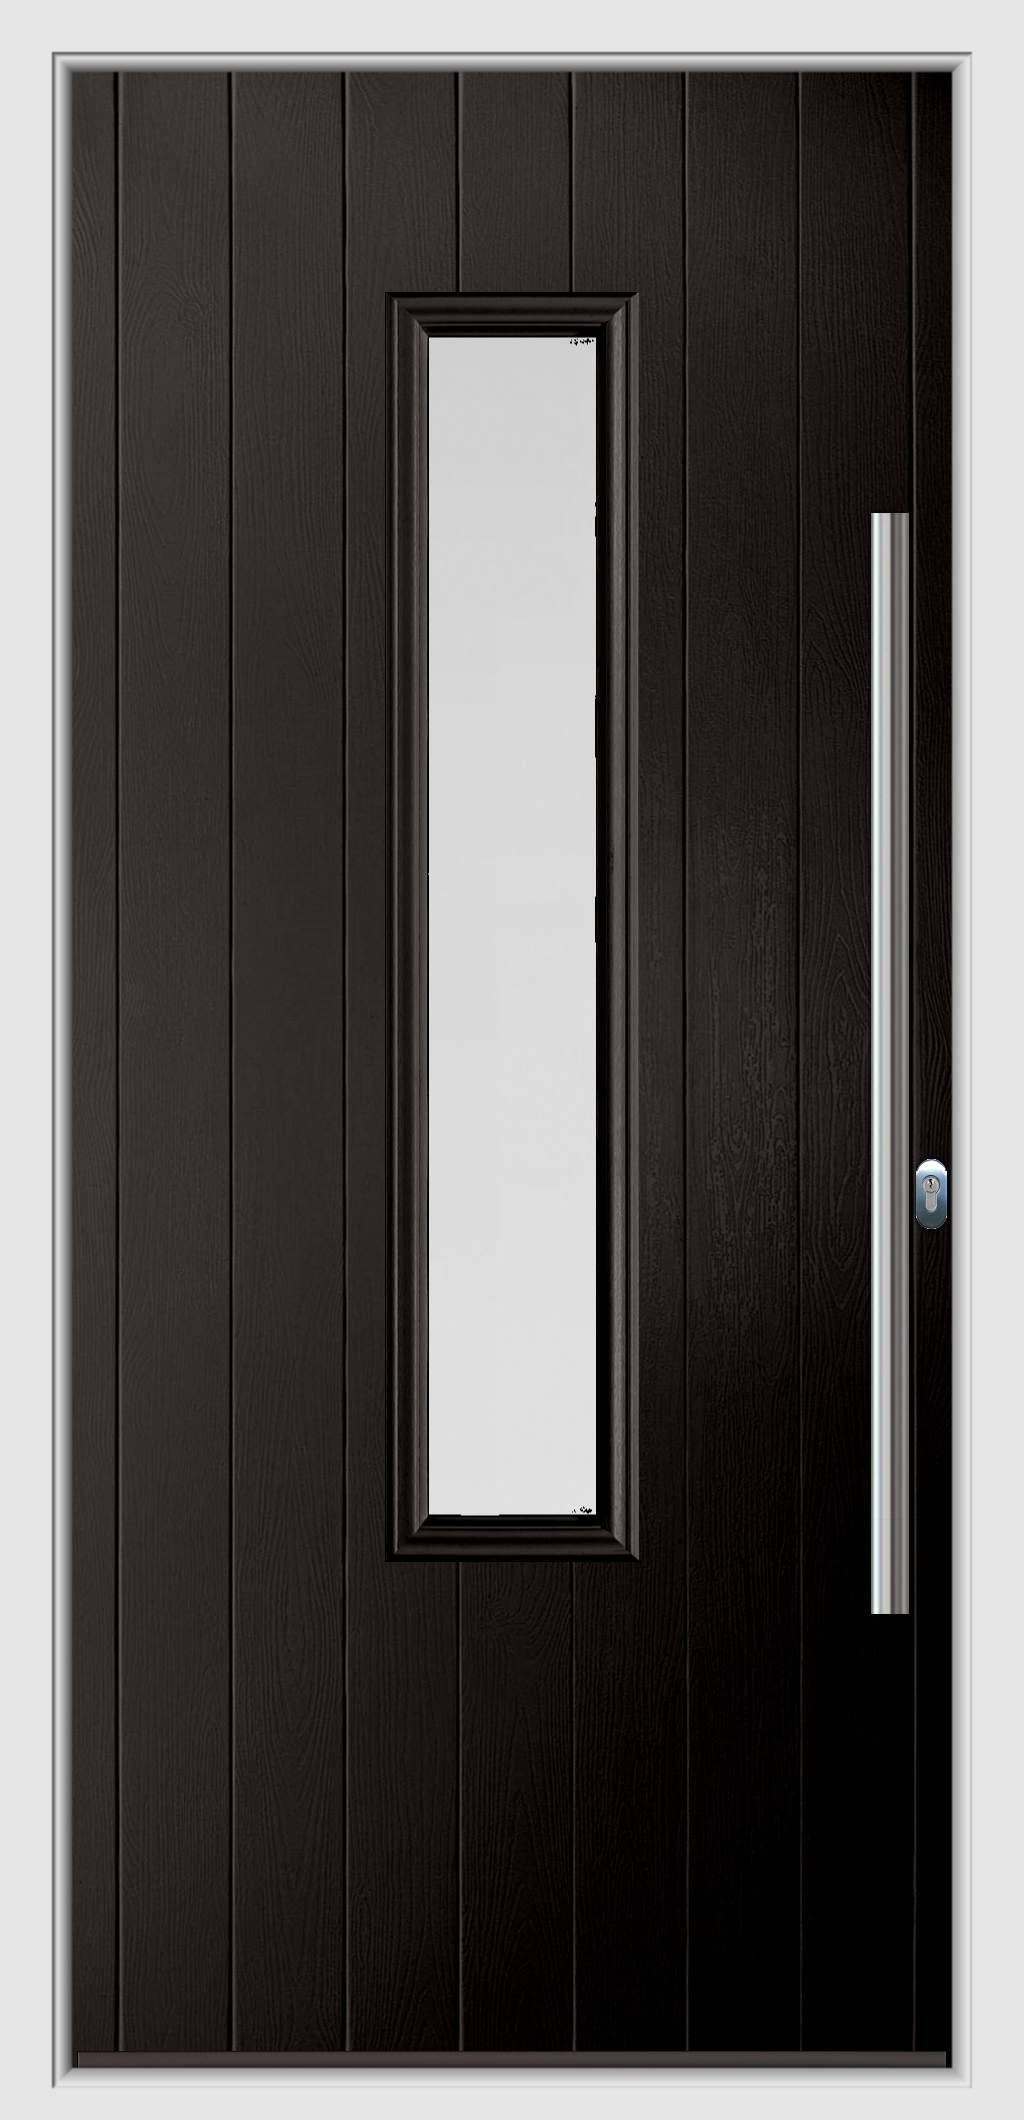 Black composite door from Caddy Windows